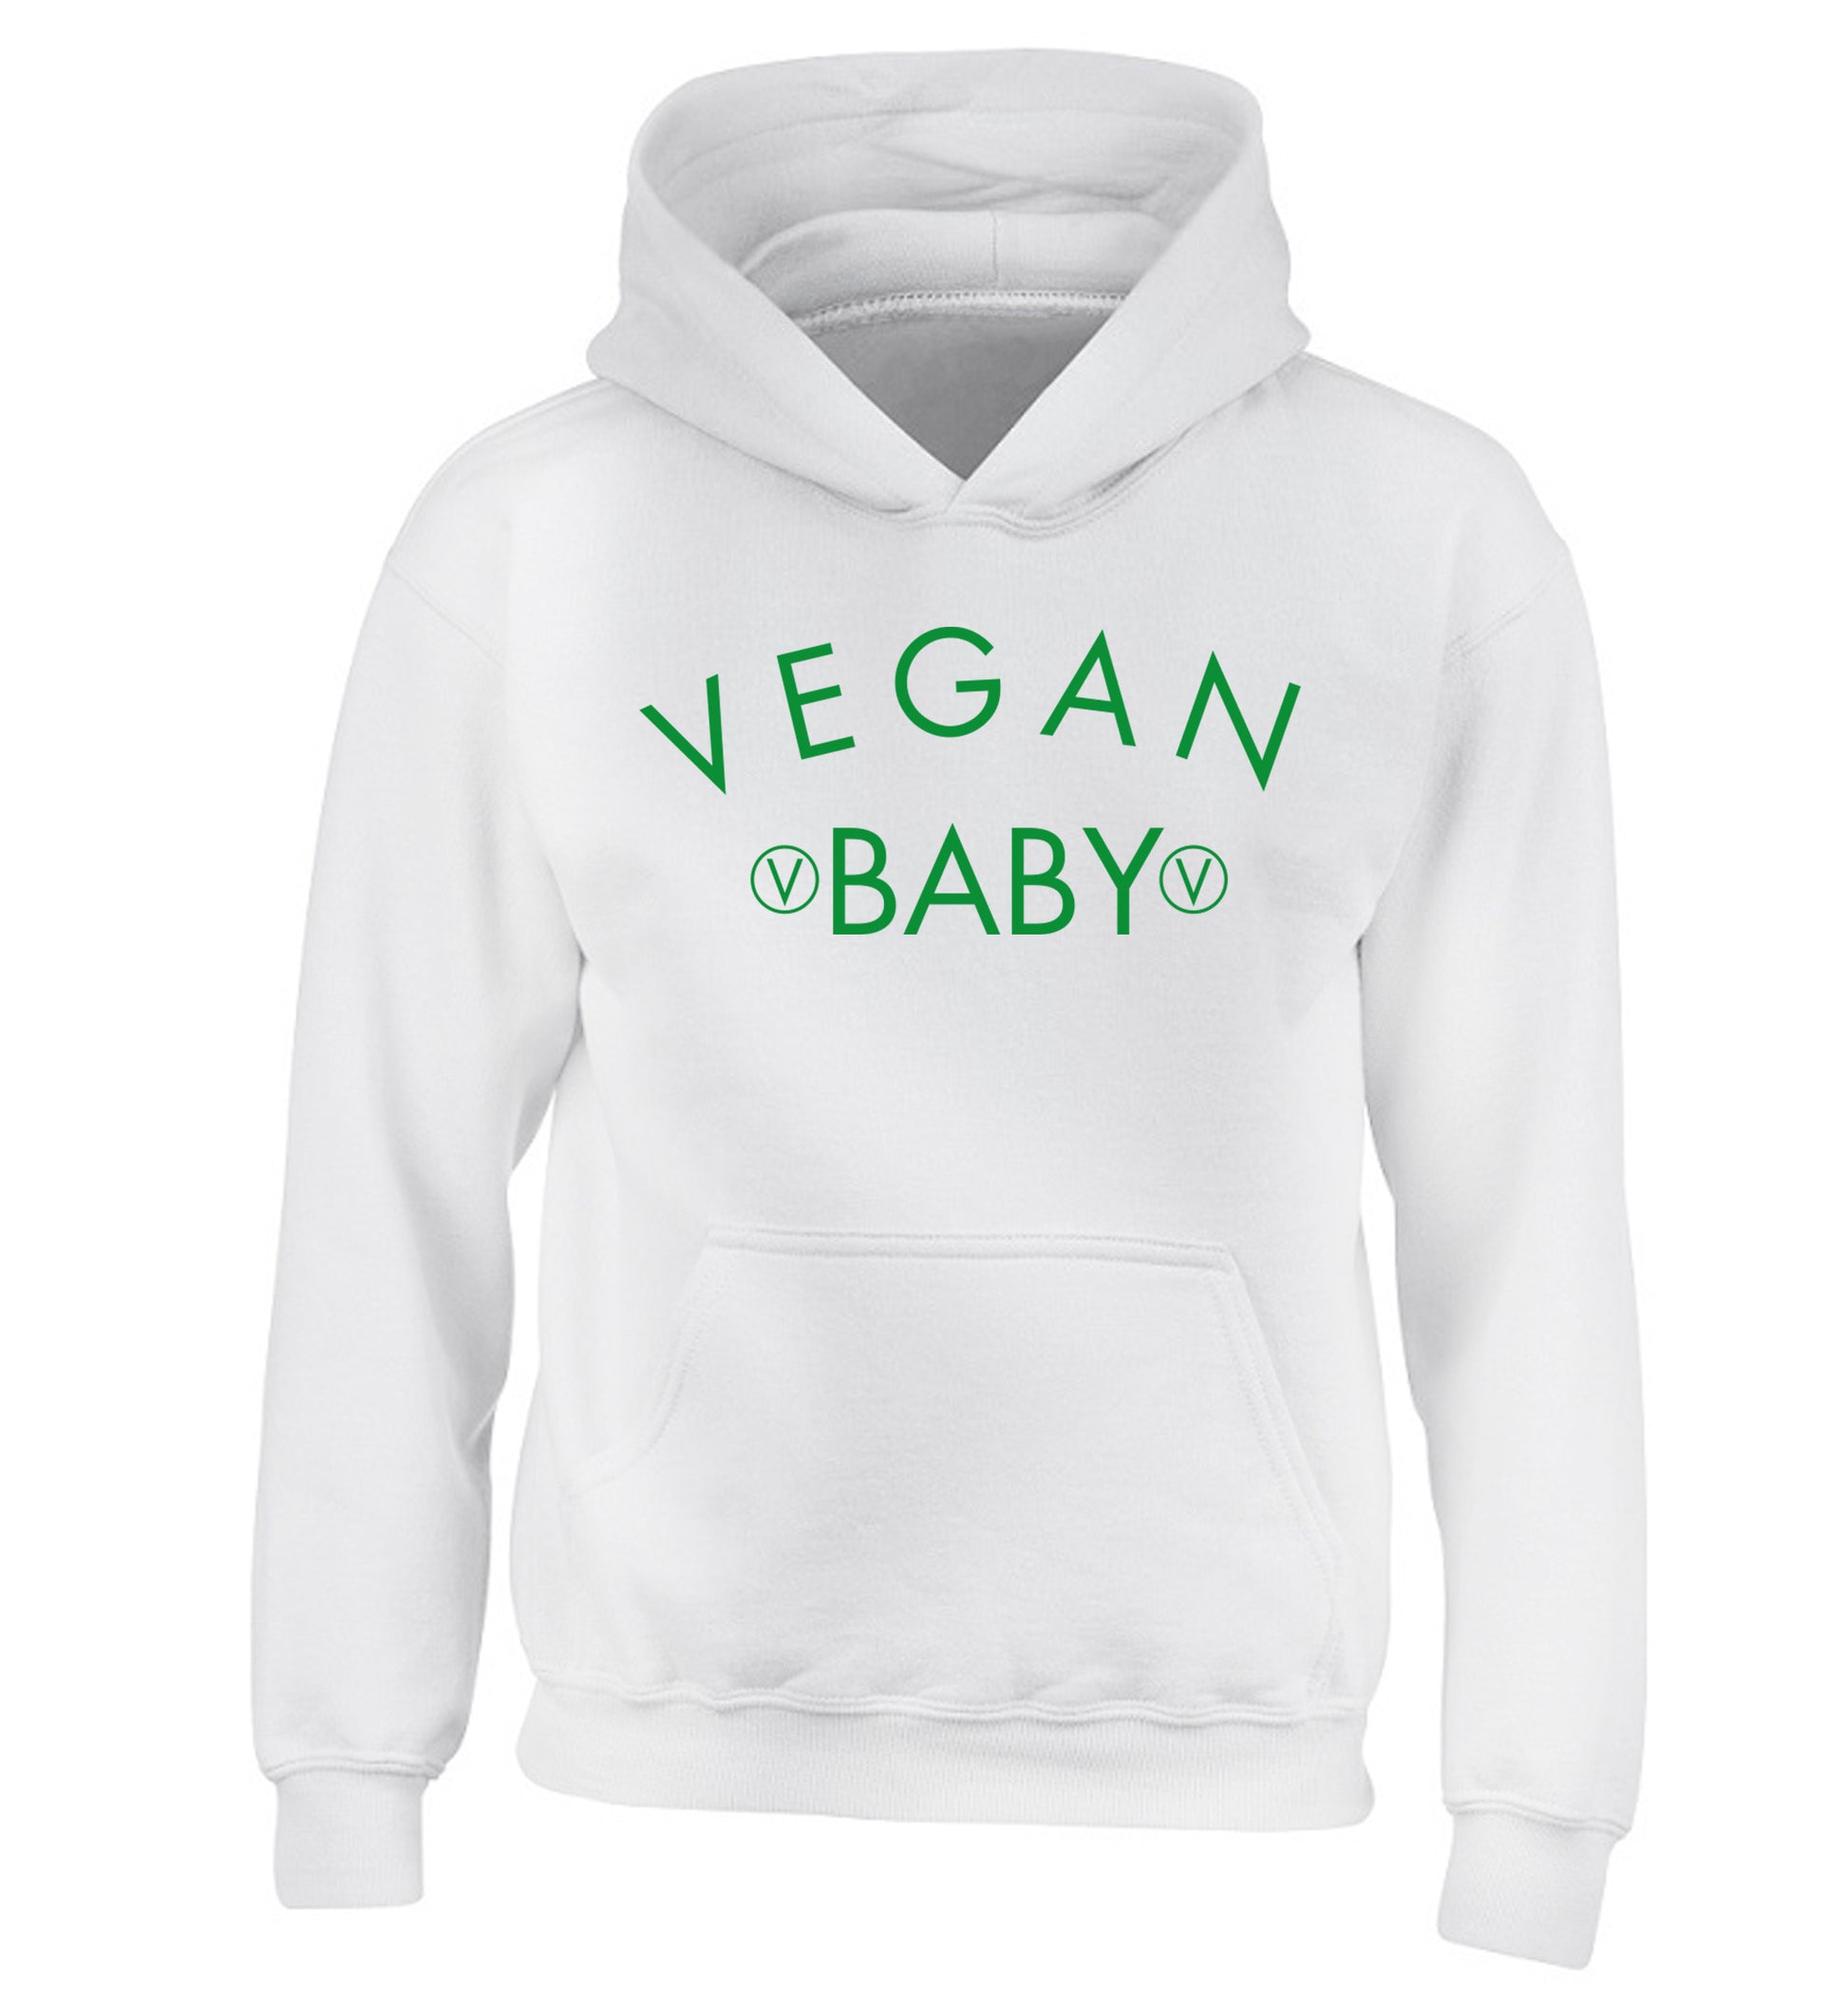 Vegan baby children's white hoodie 12-14 Years